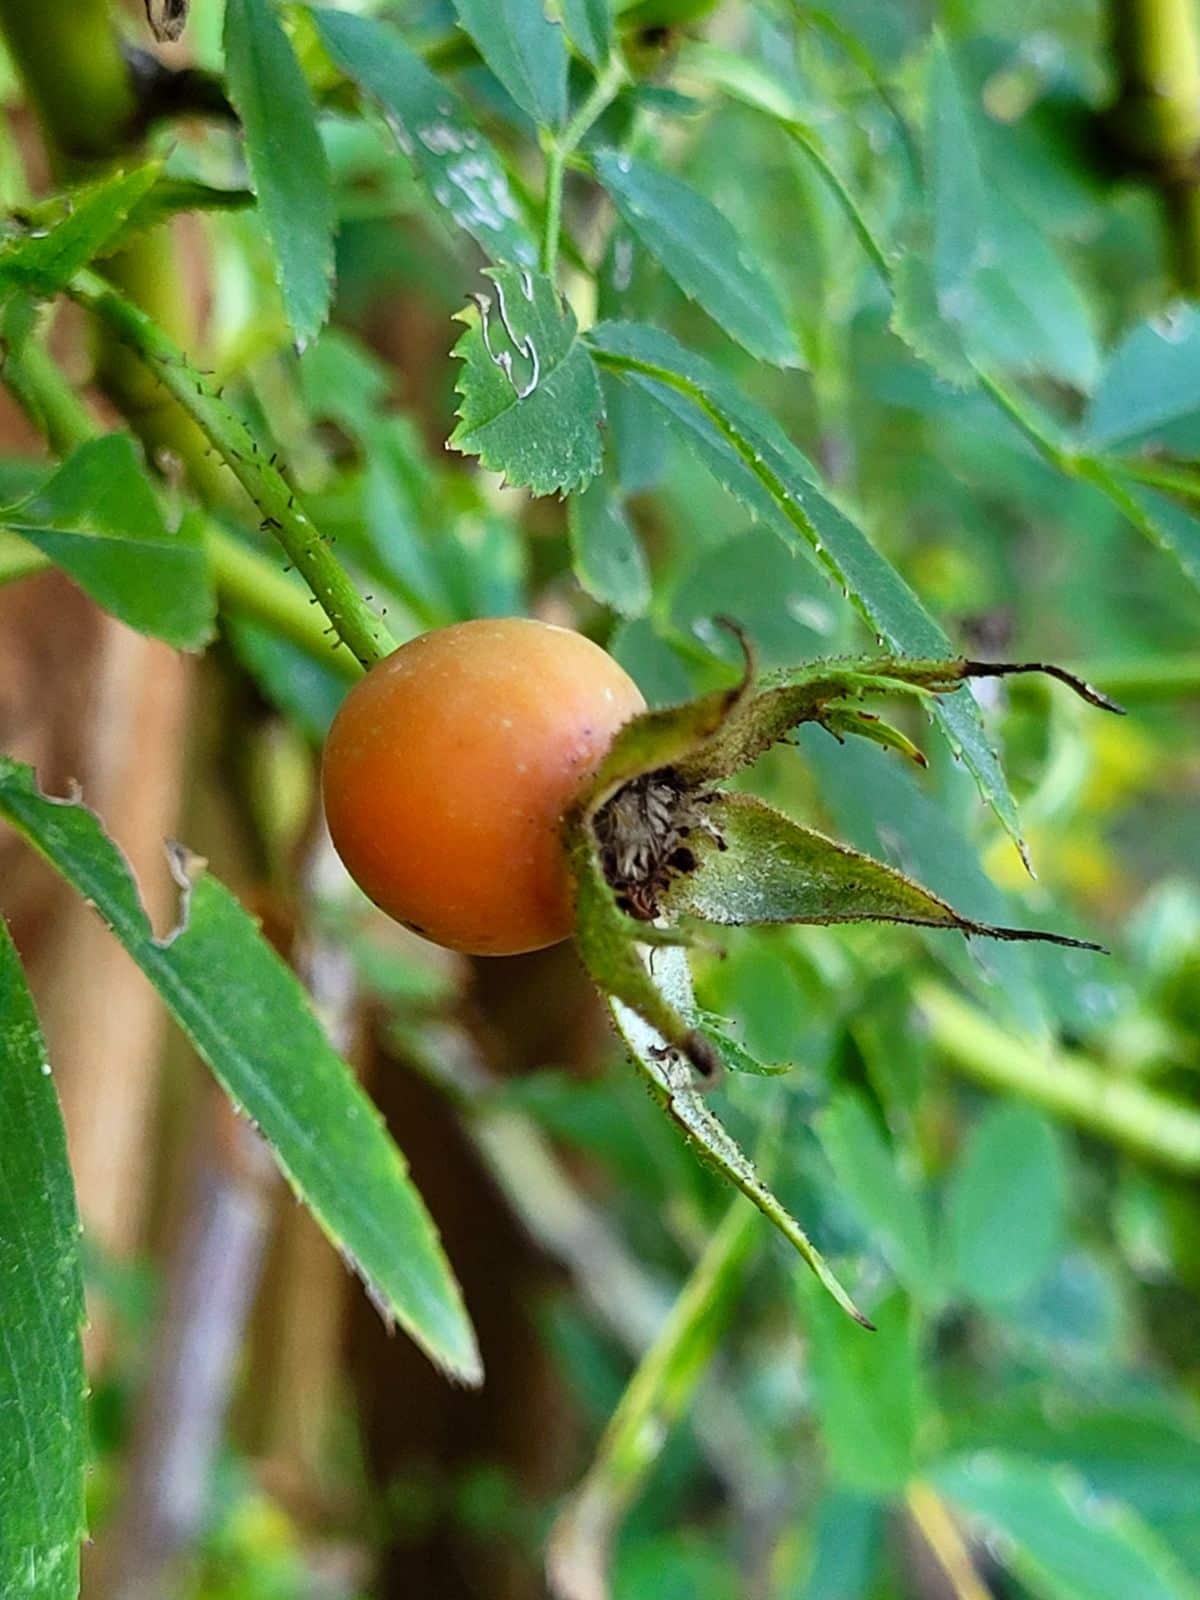 A ripening orange rose hip